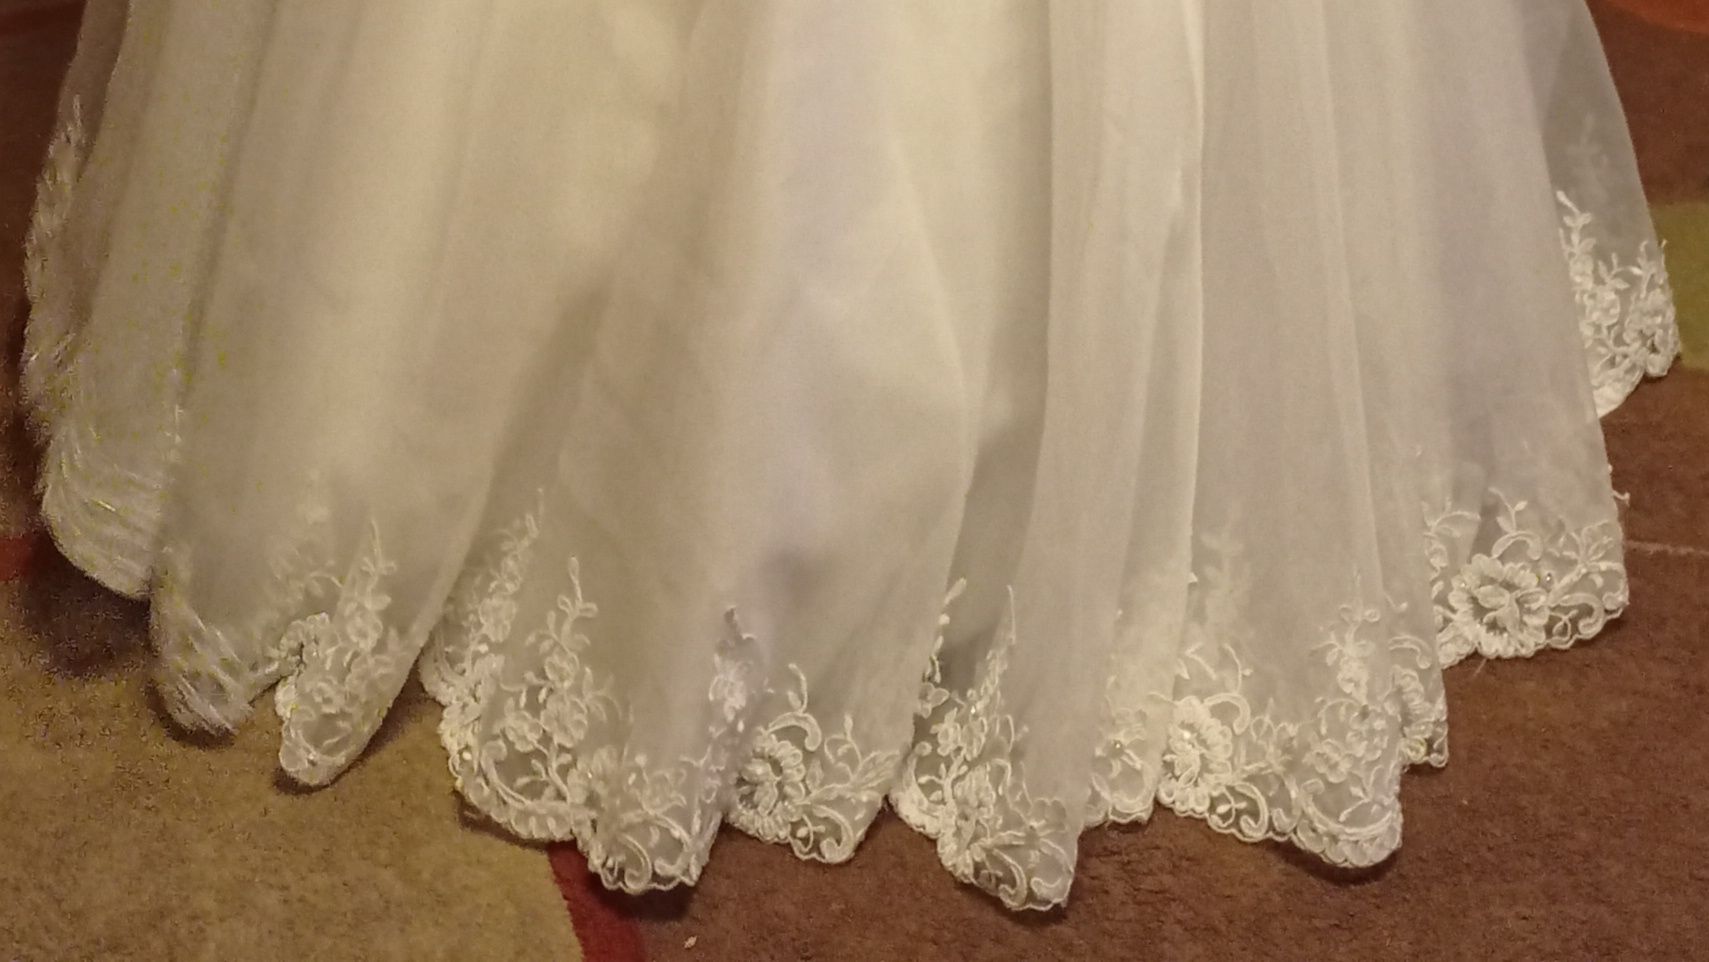 Suknia ślubna na kole, biała